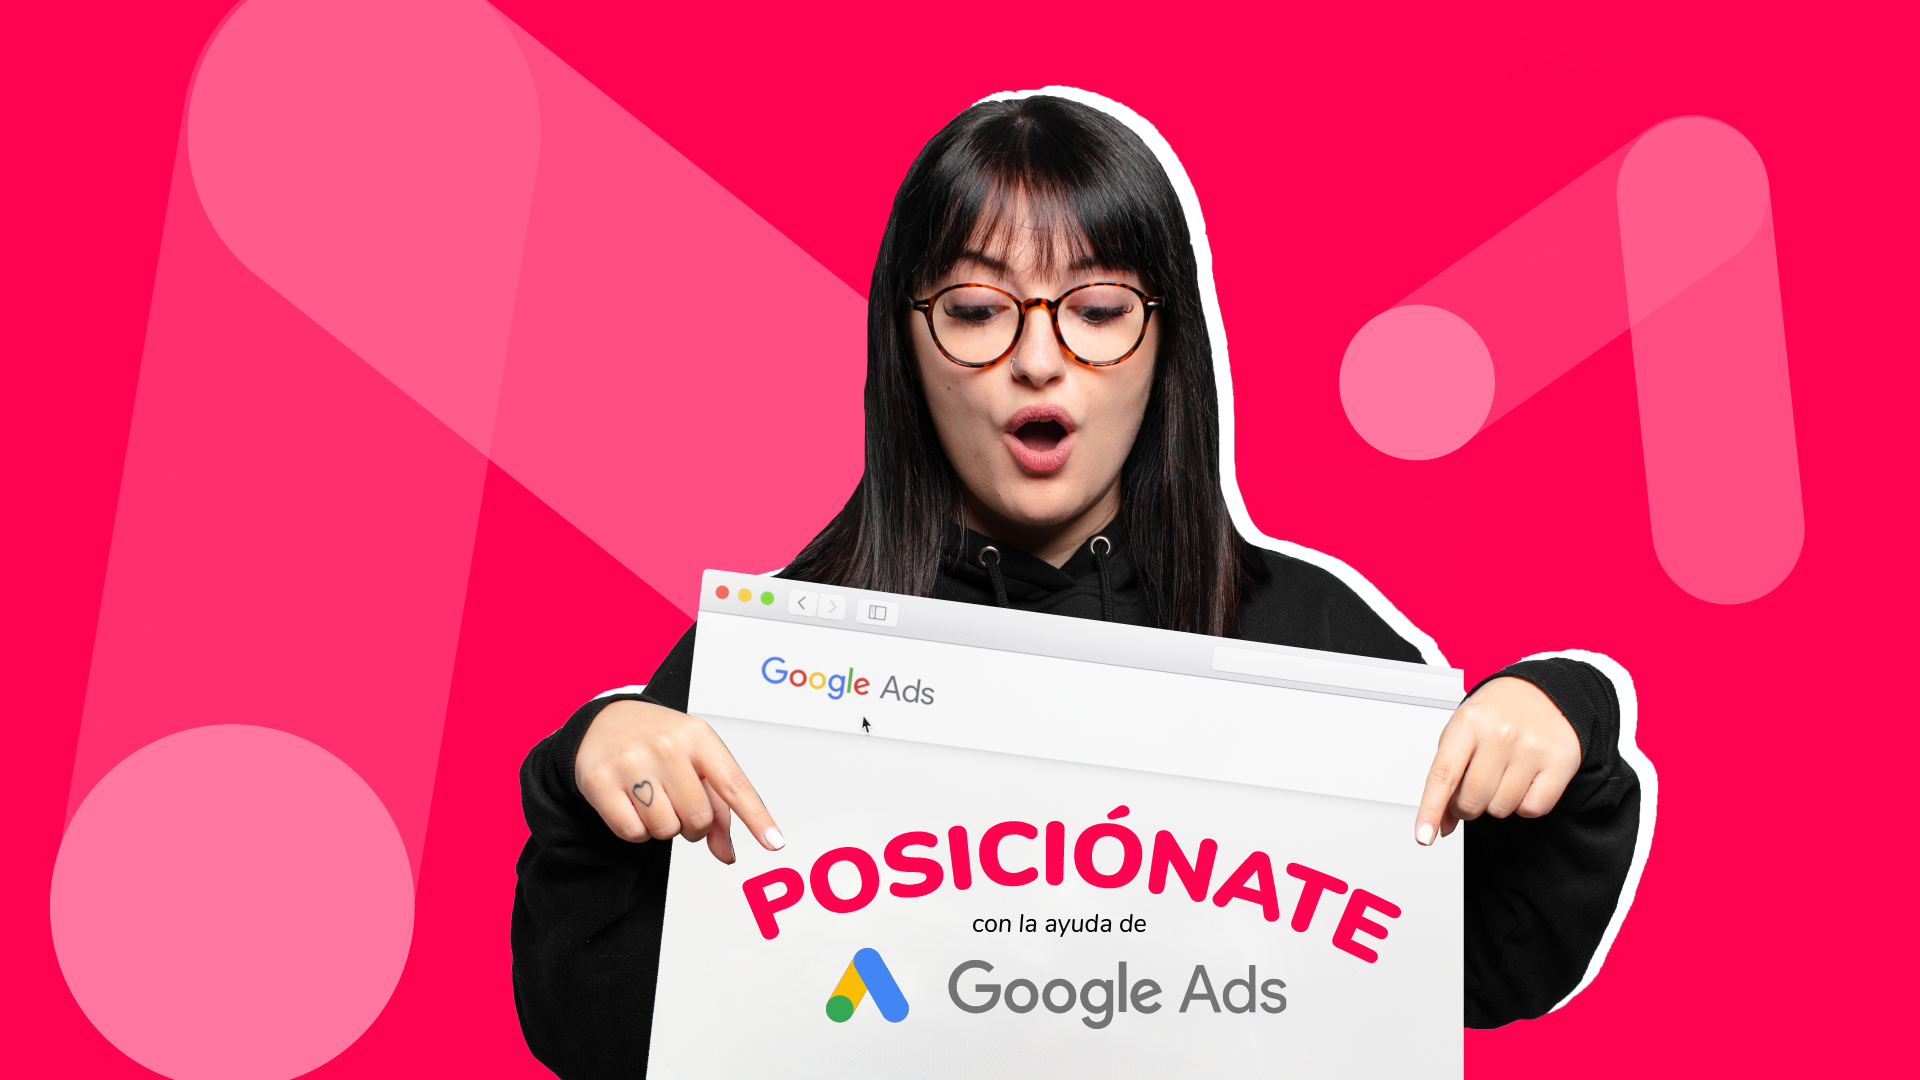 Posicionamiento con google ads